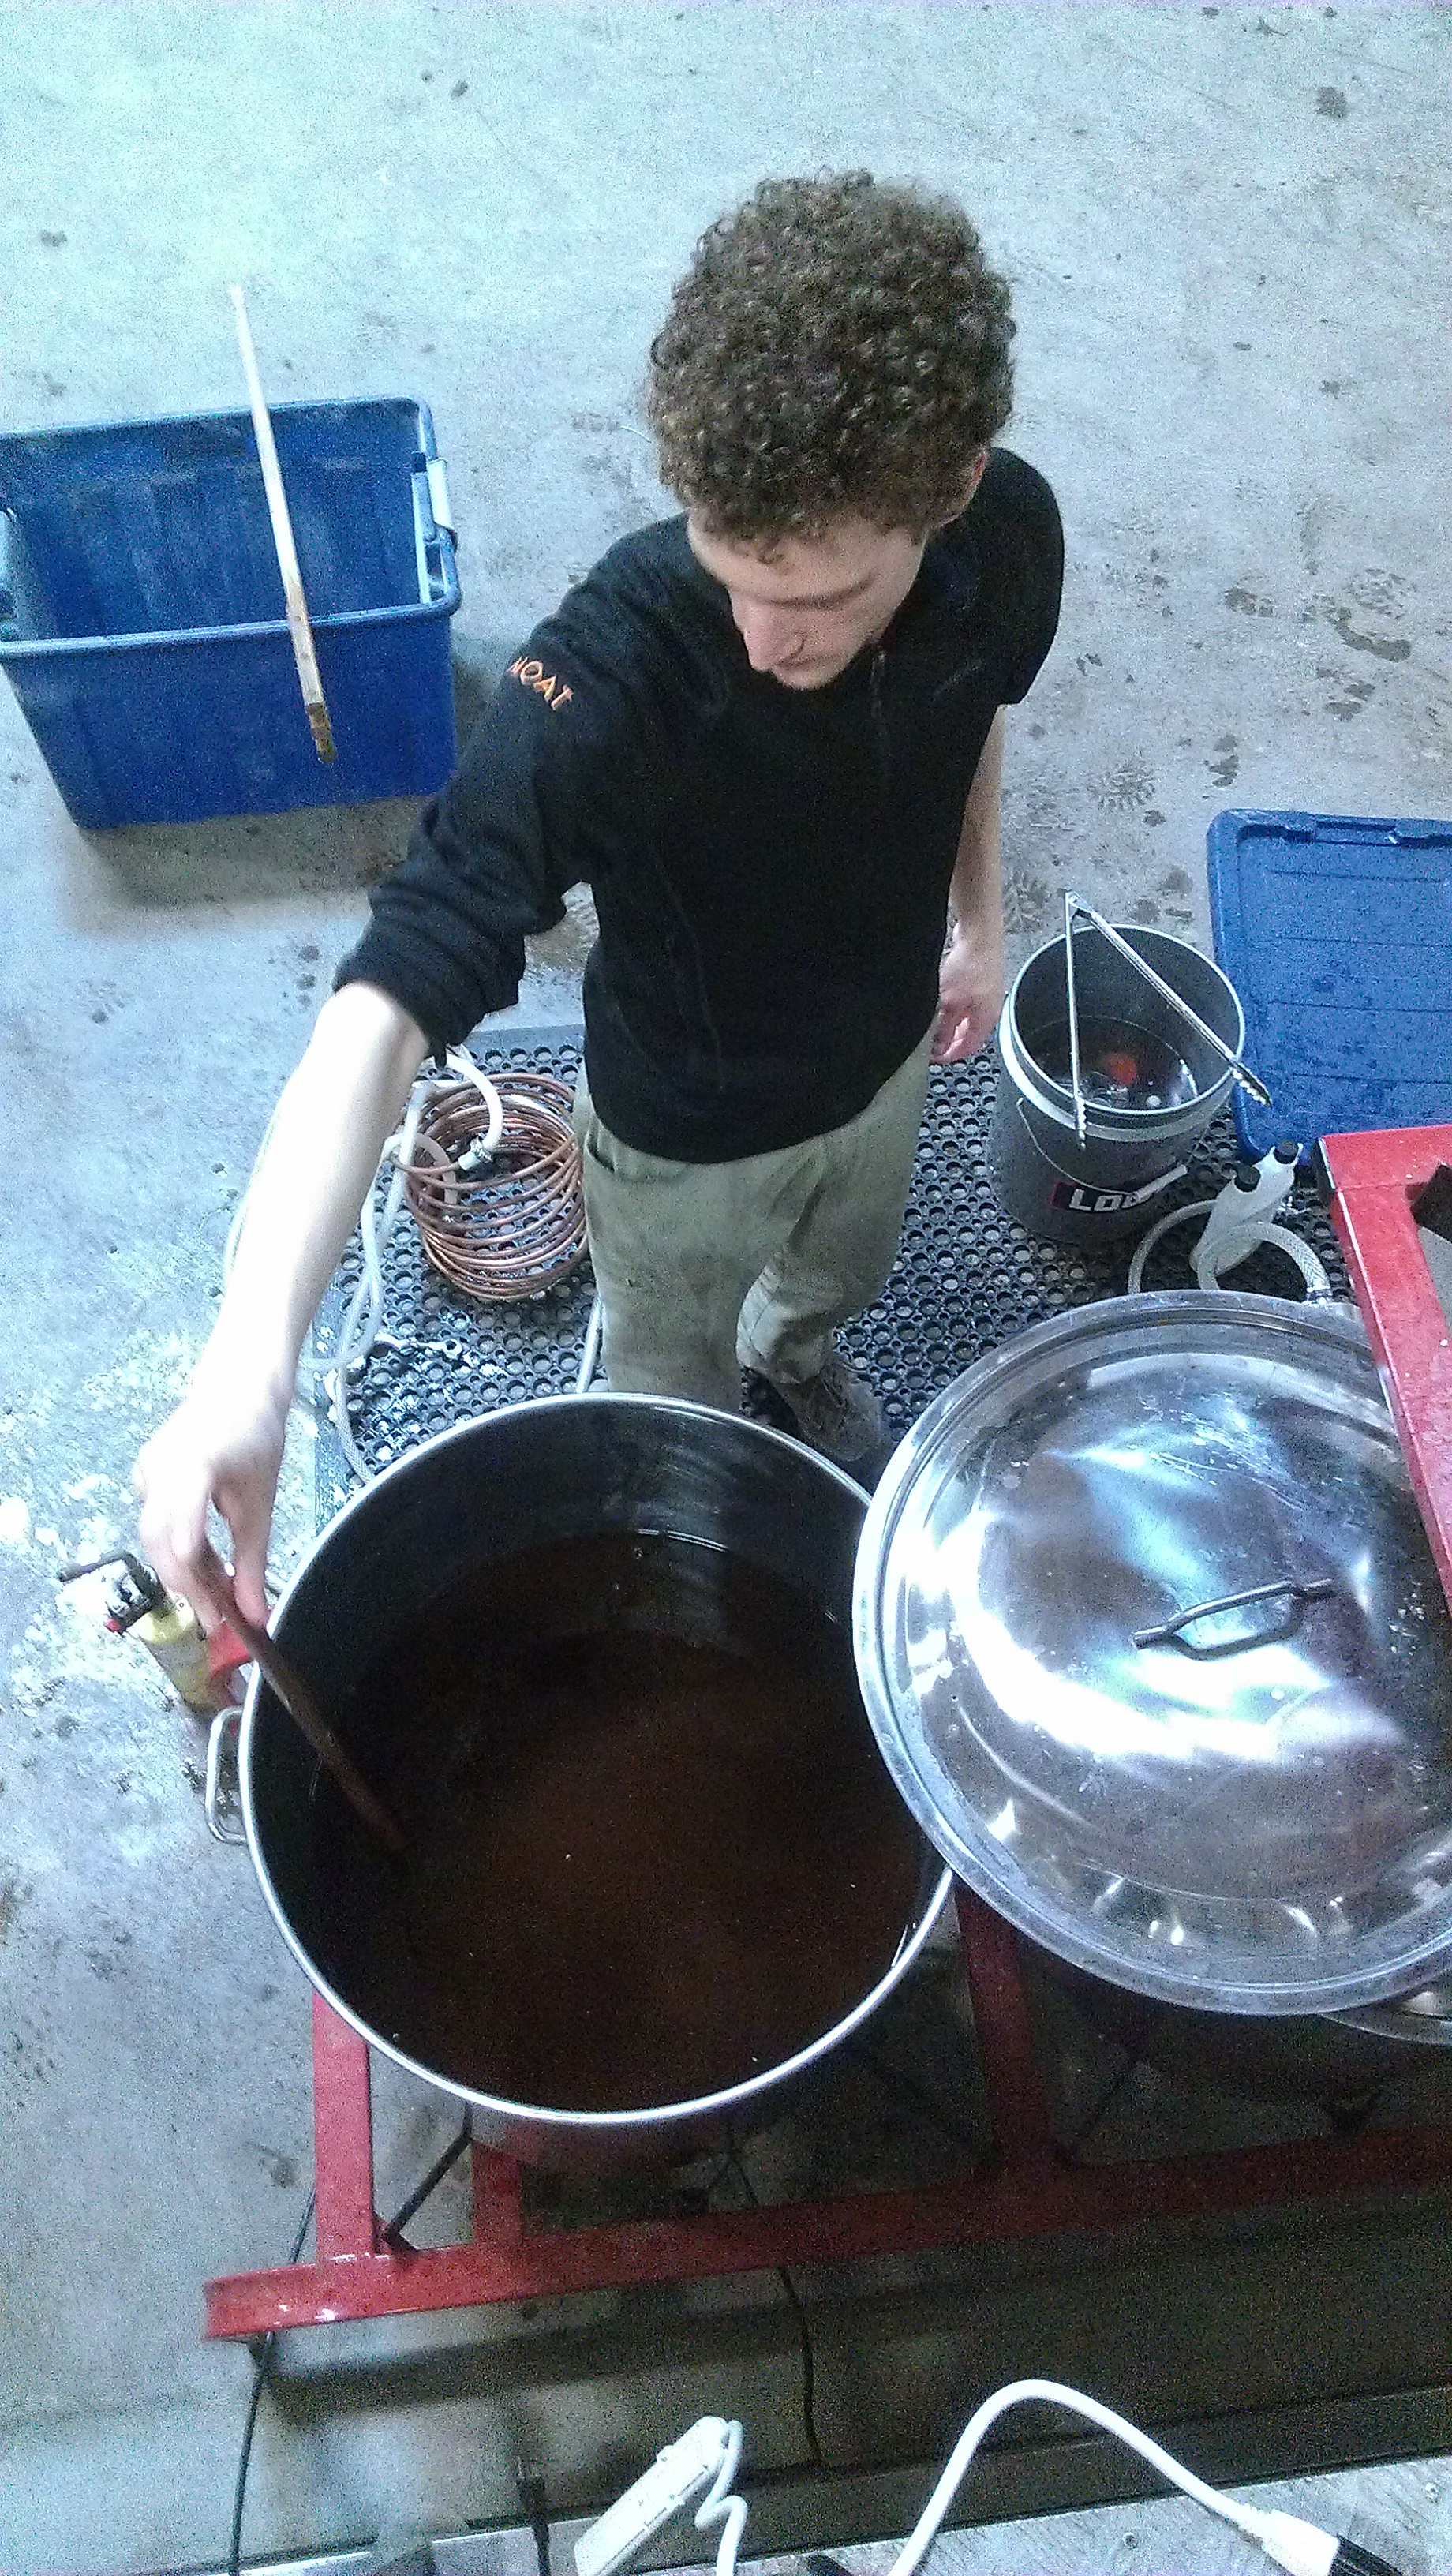 Dan stirs a heady brew